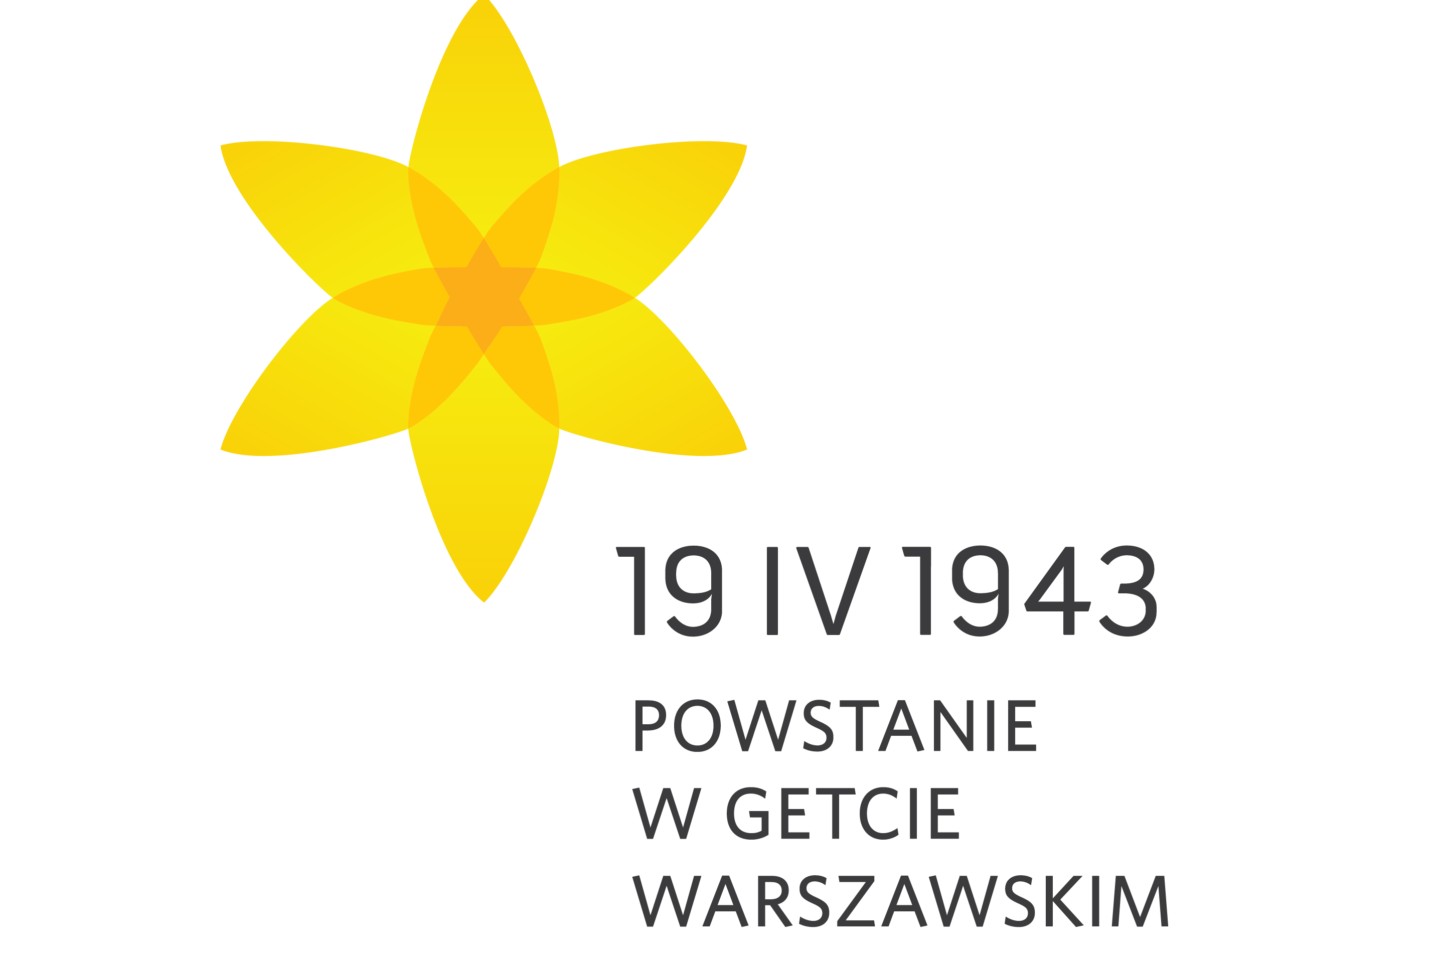 Na białym tle graficzny symbol przedstawiający żonkila. Poniżej, obok czarny napis „19 IV 1943 POWSTANIE W GETCIE WARSZAWSKIM”